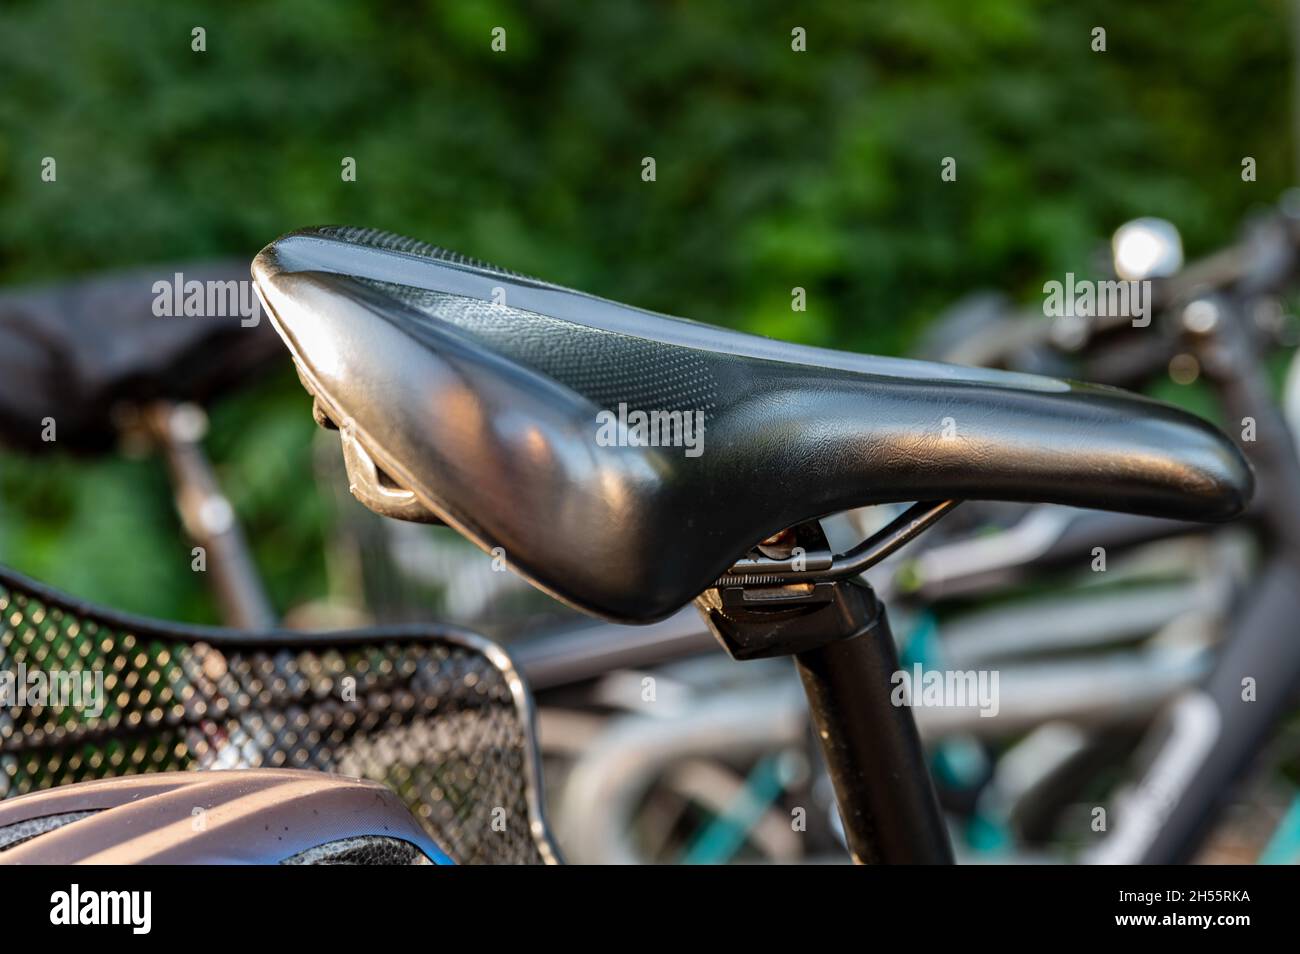 Nahaufnahme eines Fahrradsattels auf einem angeschlossenen Fahrrad Stockfoto